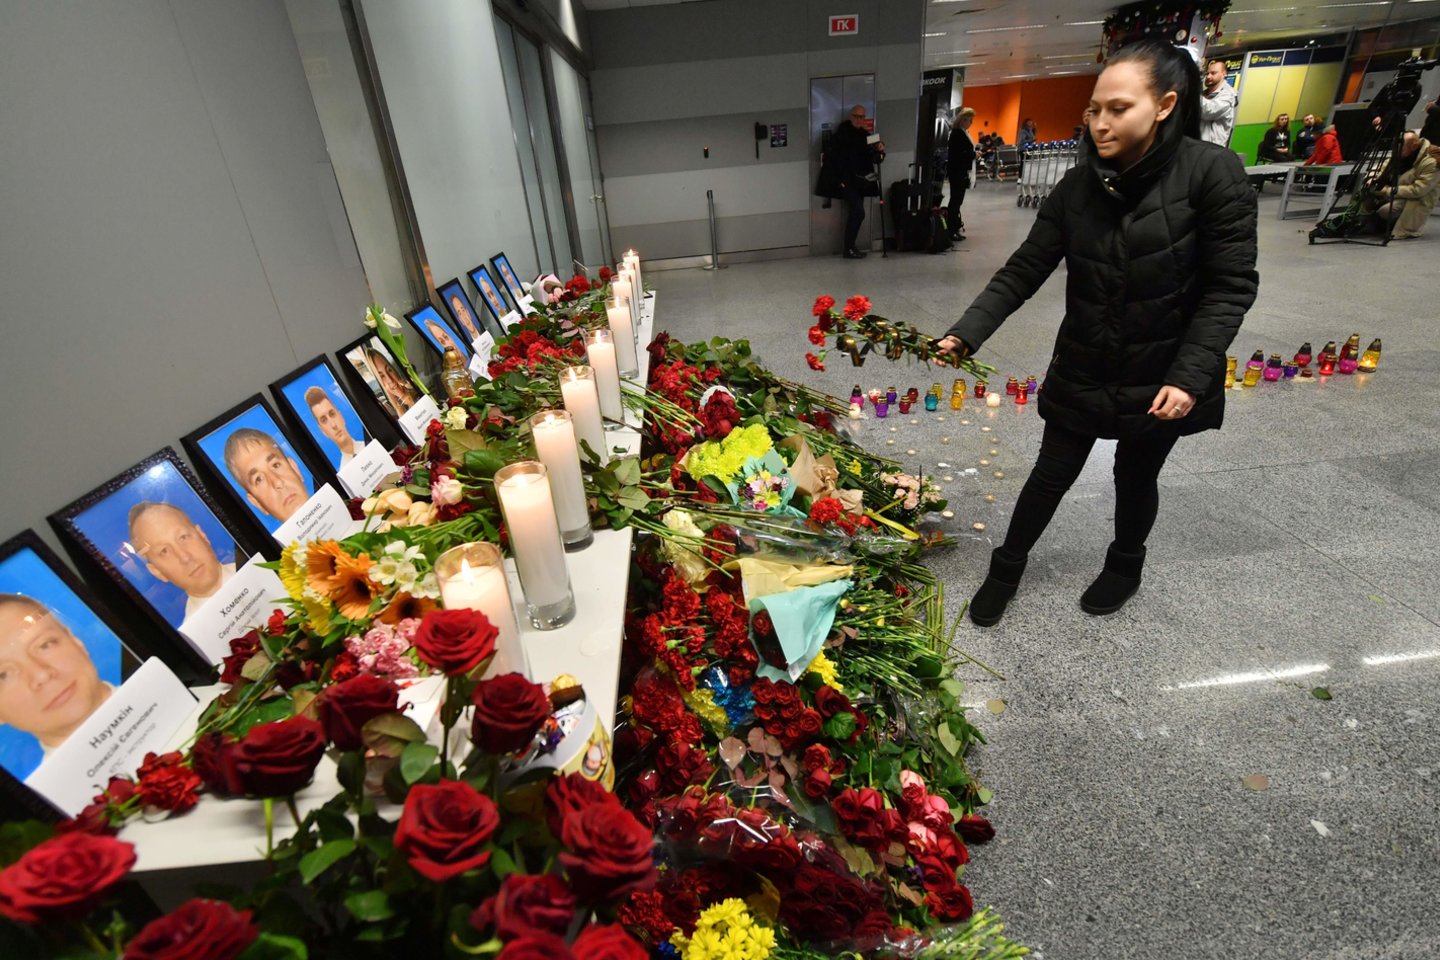  Ukrainos prezidentas Volodymyras Zelenskis sausio 9 dieną visoje šalyje paskelbė gedulo diena. V. Zelenskis taip pat pranešė, kad kalbėsis su Irano prezidentu Hassanu Rouhani ir sieks bendro šalių bendradarbiavimo, vykdant lėktuvo katastrofos tyrimą. <br>AFP/Scanpix nuotr.